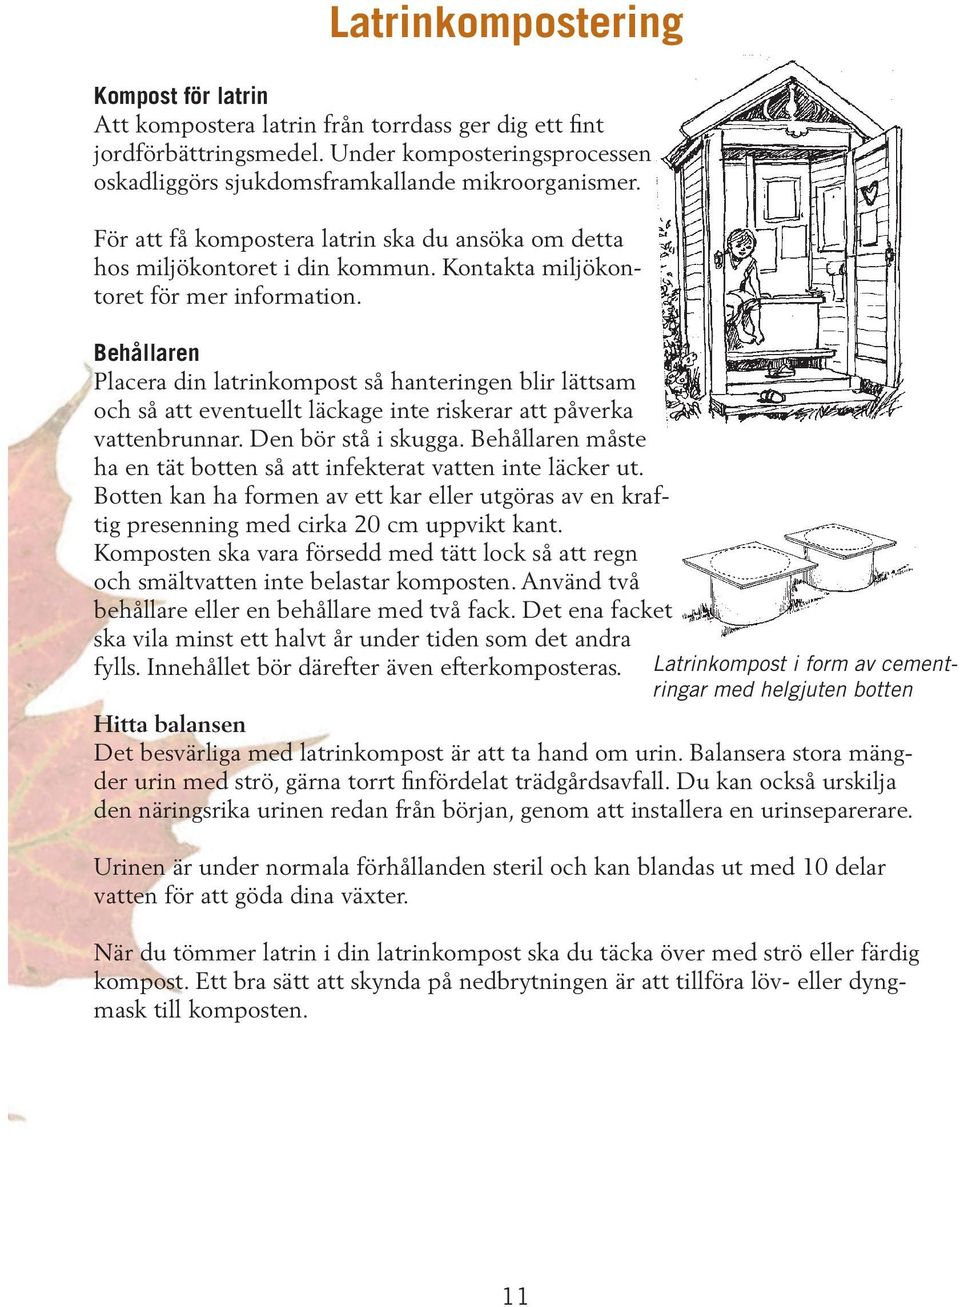 Komposteringsguide. Hur du komposterar hemma. Matavfall - Trädgårdsavfall -  Latrin - PDF Free Download